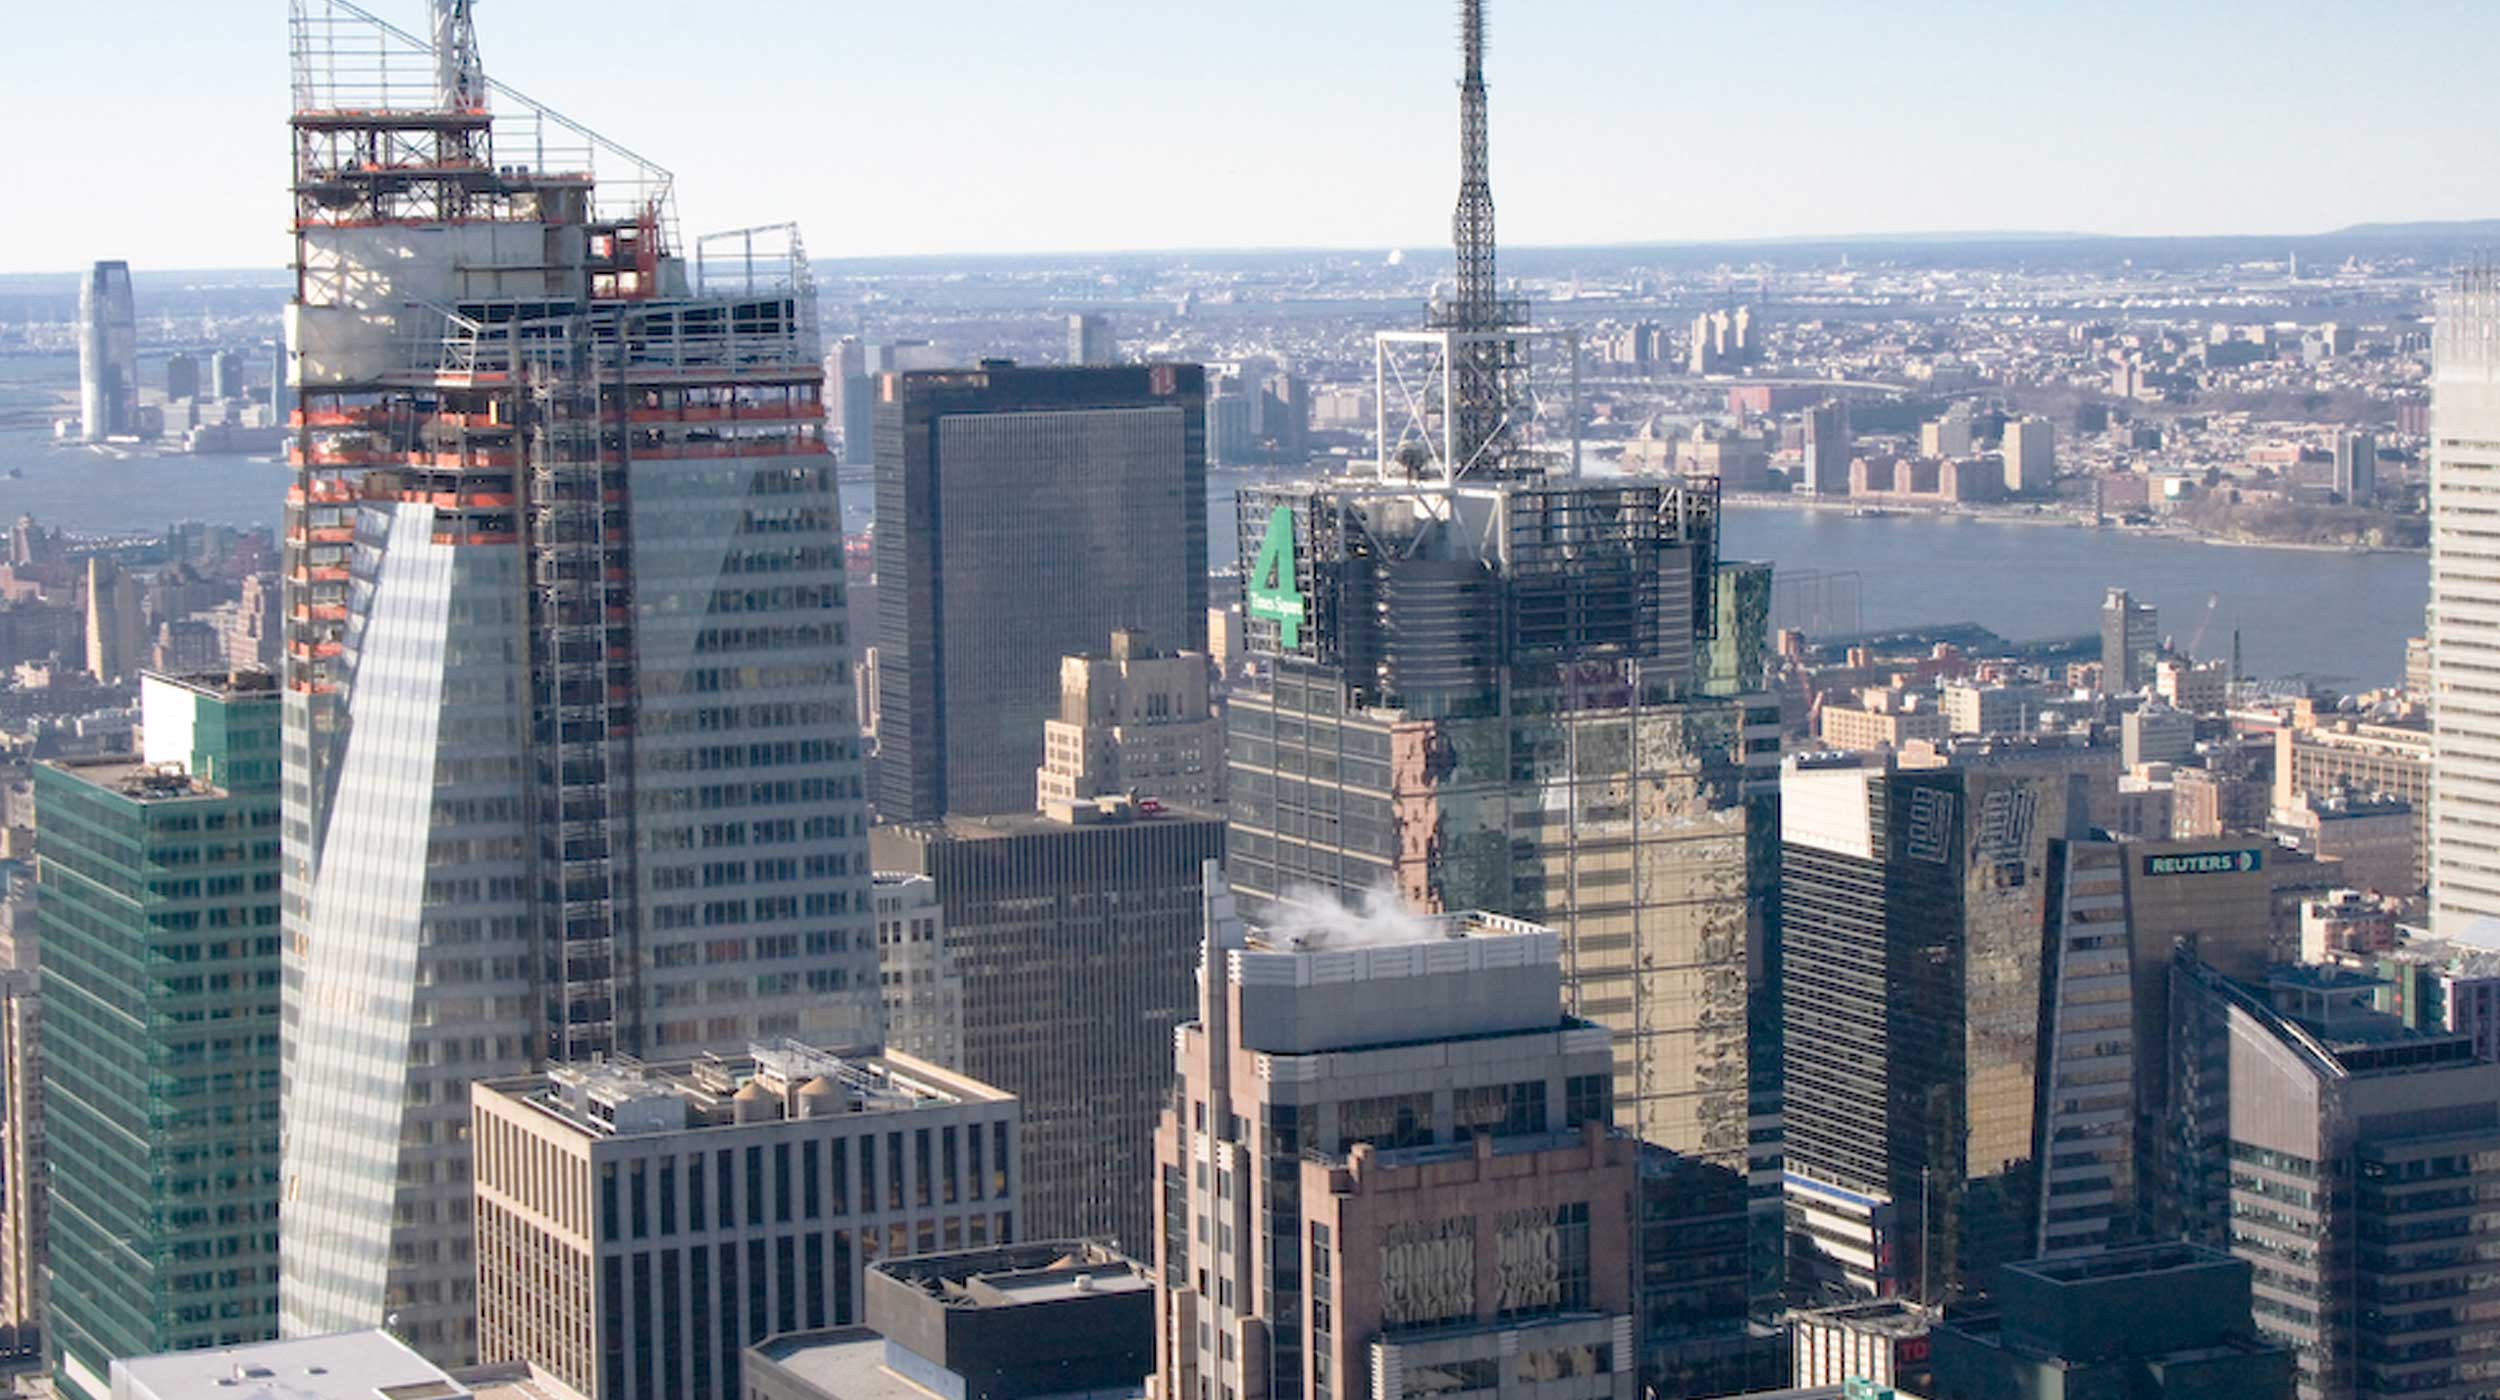 Los 300 m de altura y sus 200.000 m² conforman una torre de cristal, sede del Banco de América.